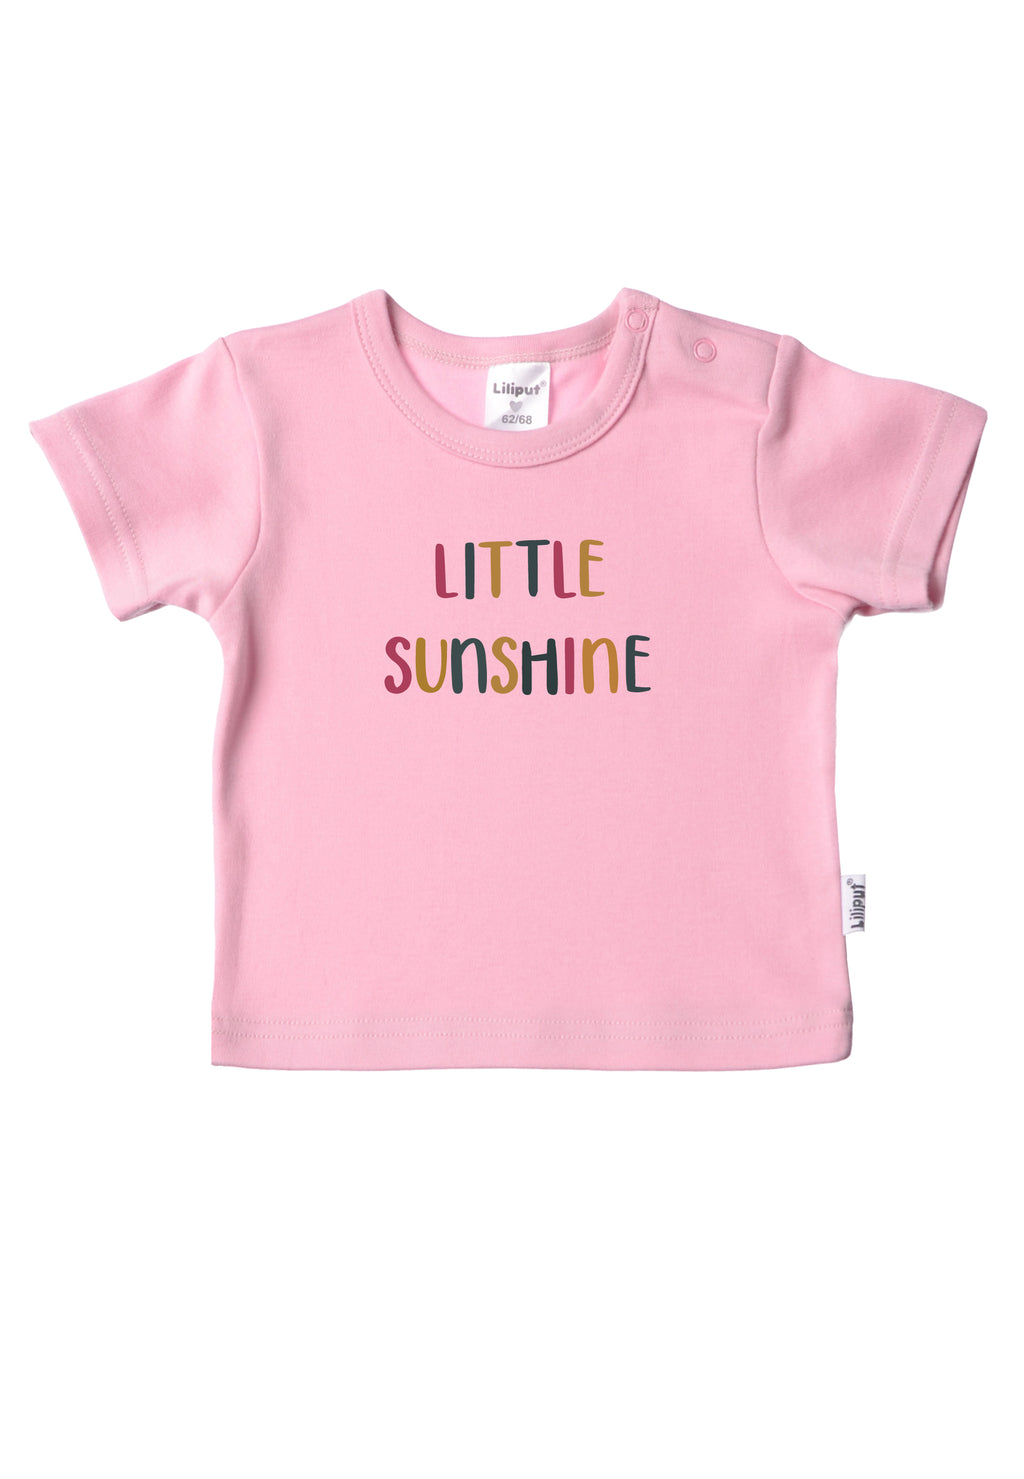 Doppelpack Baby T-Shirts in pink und weiß Bio Baumwolle mit Prints